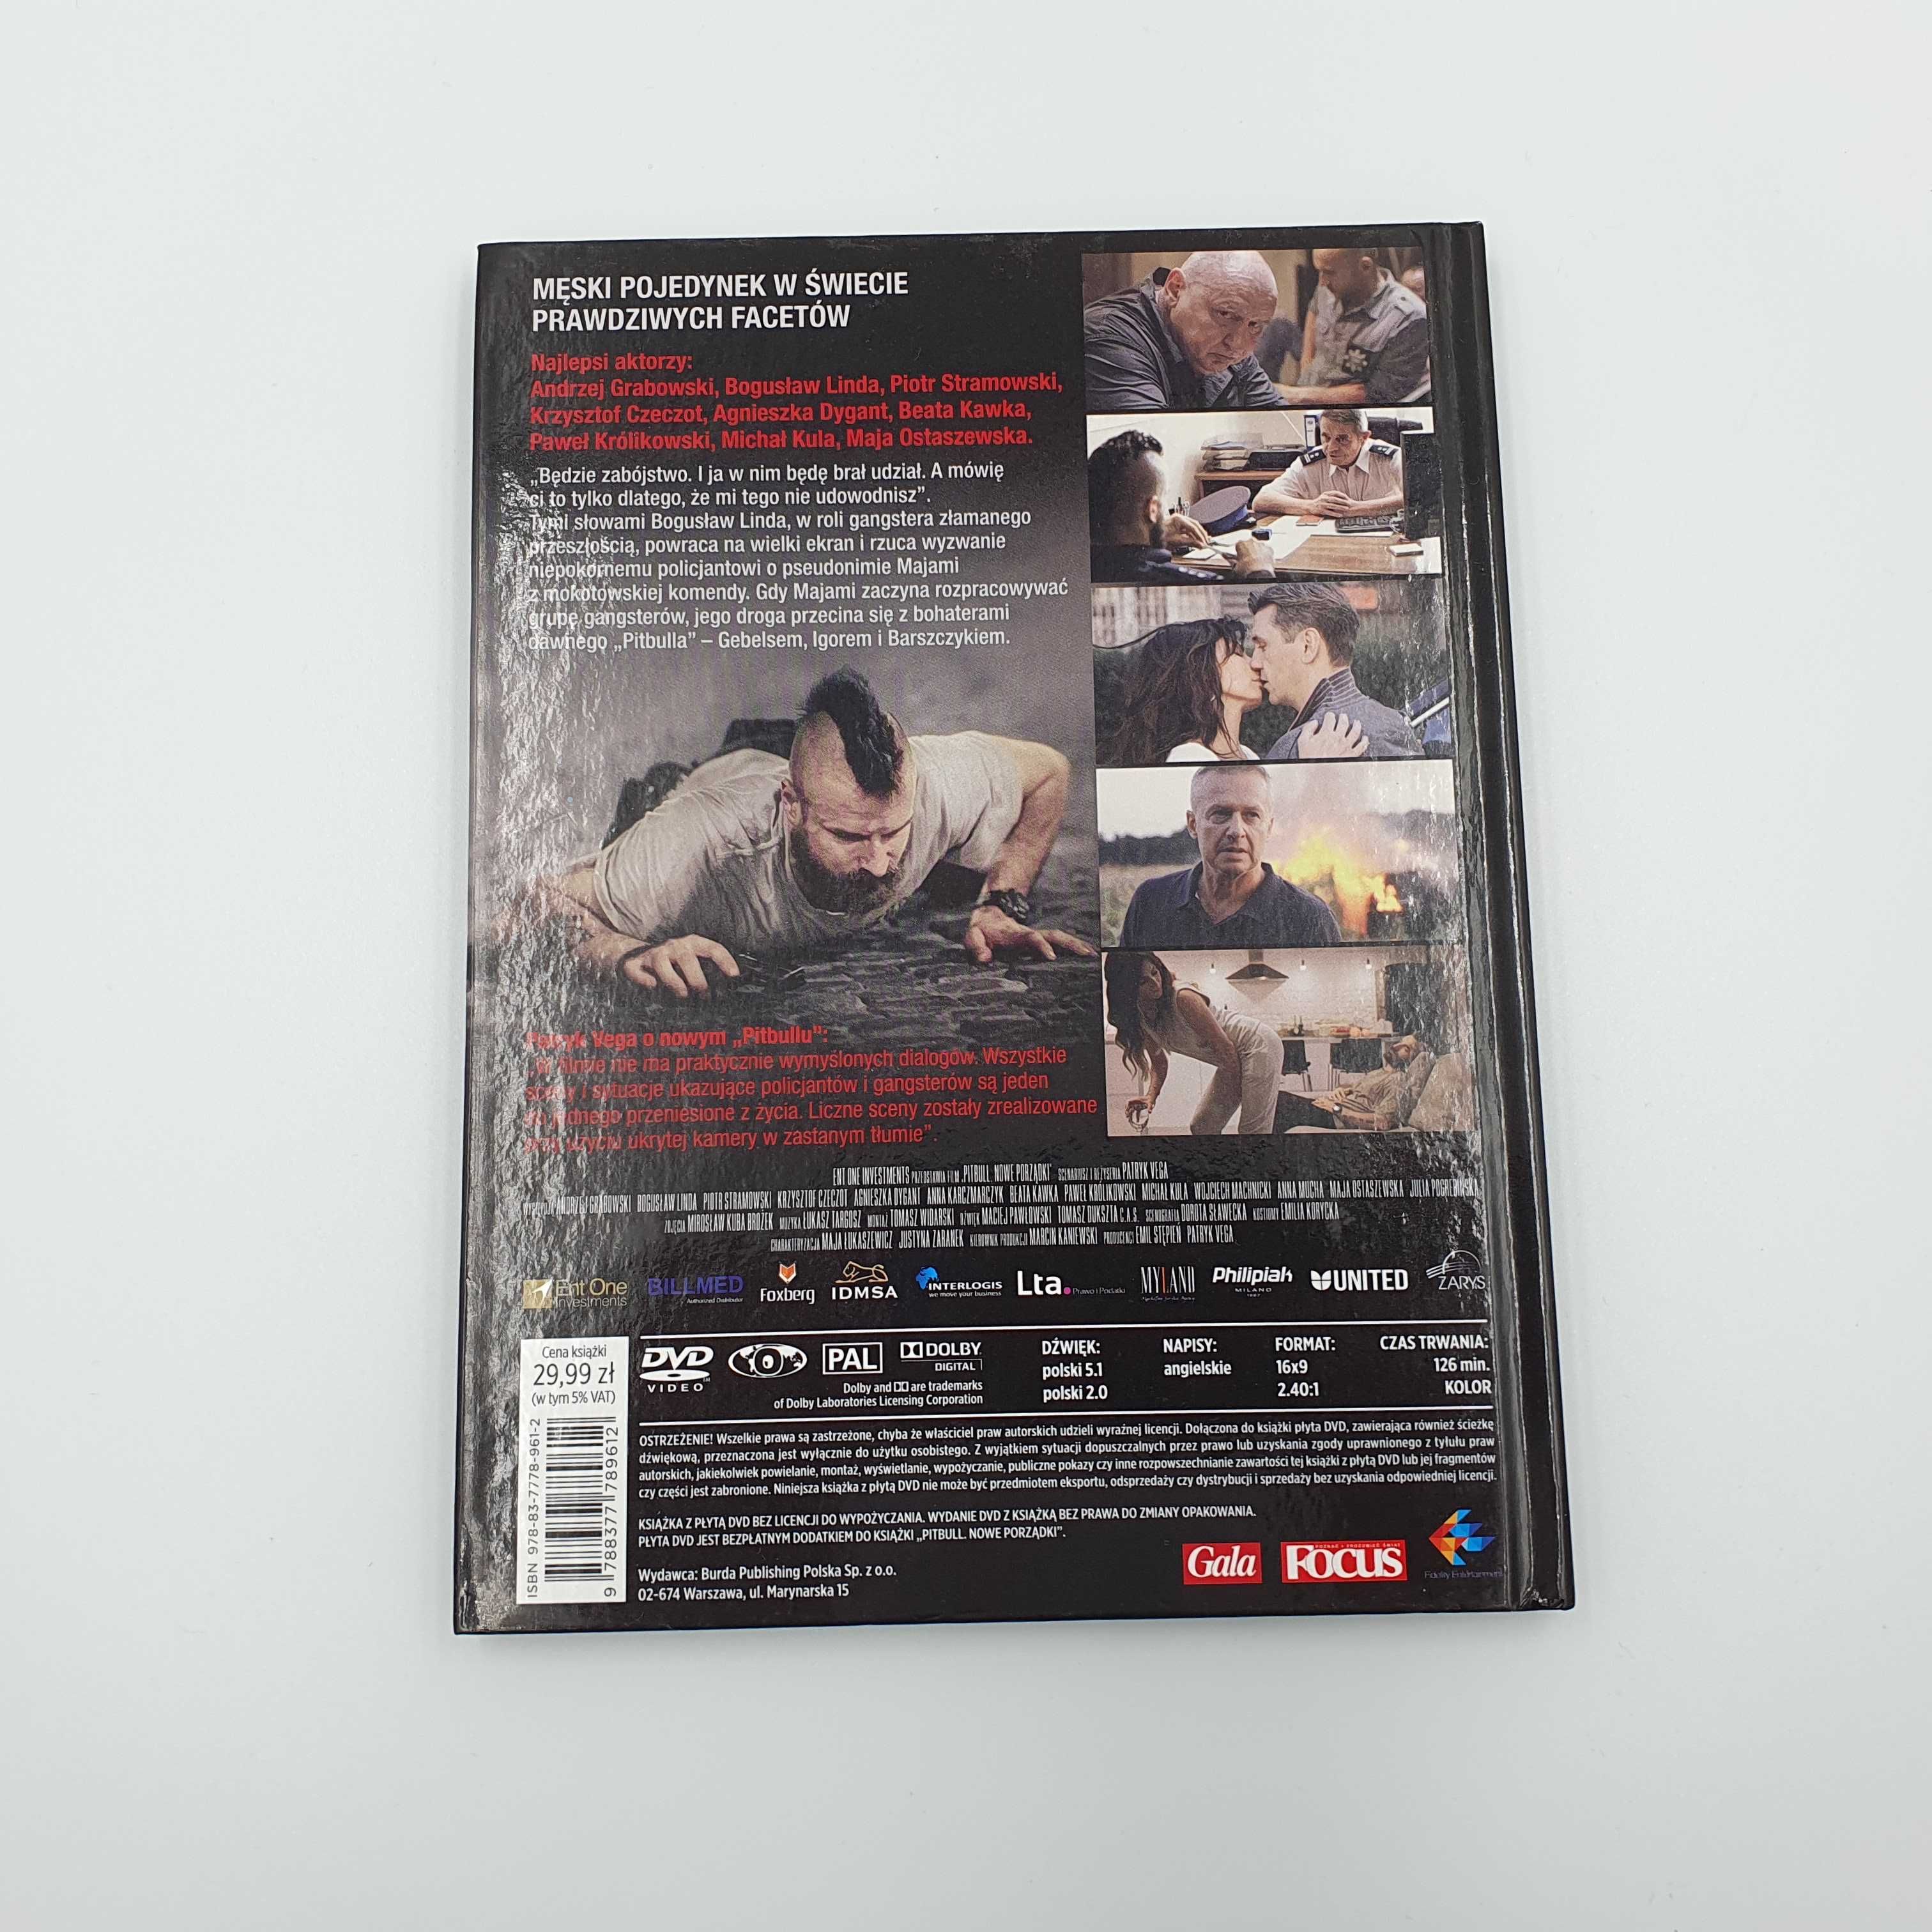 Pitbull Nowe porządki Film płyta DVD + Książka